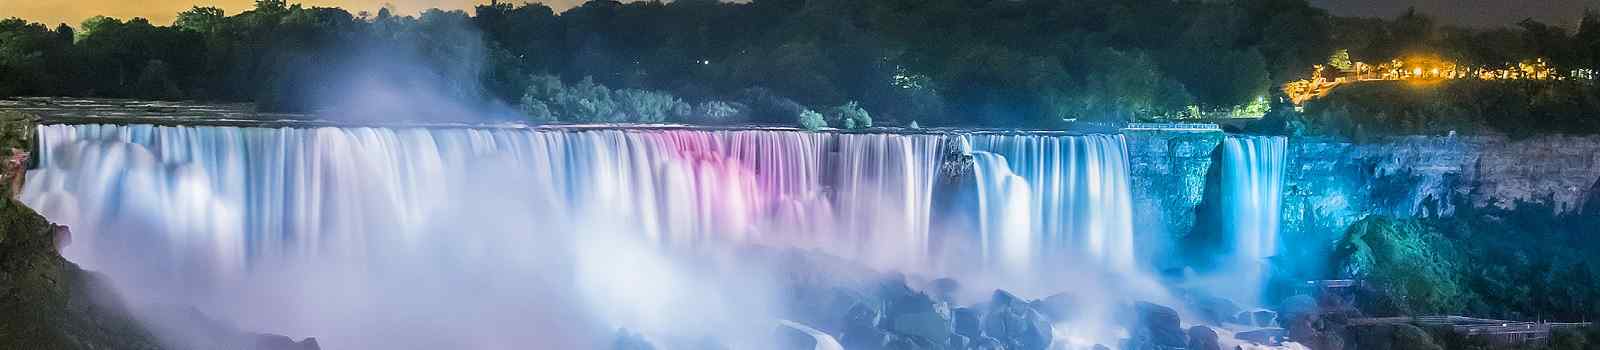 KL-USA-CAD-CHICAGO-NY  Niagarafaelle farbenfroh beleuchtet in der Nacht